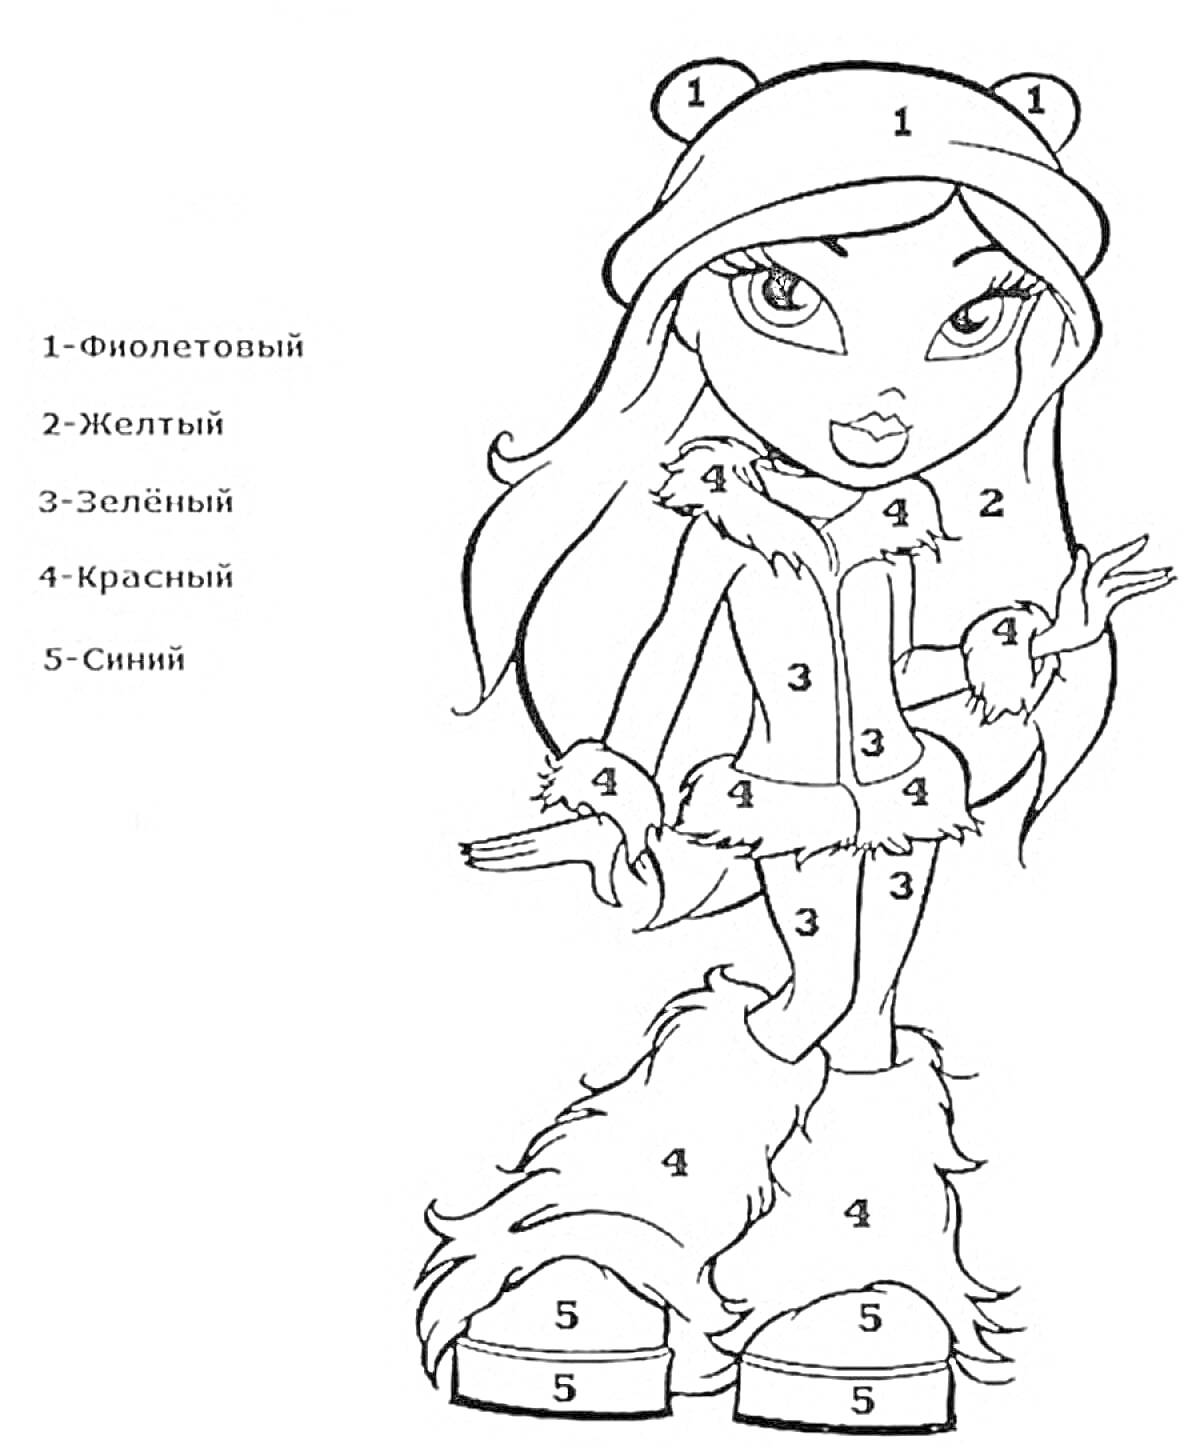 Девушка в шапке с медвежьими ушками, куртке с мехом, варежках, штанах и сапогах с мехом.